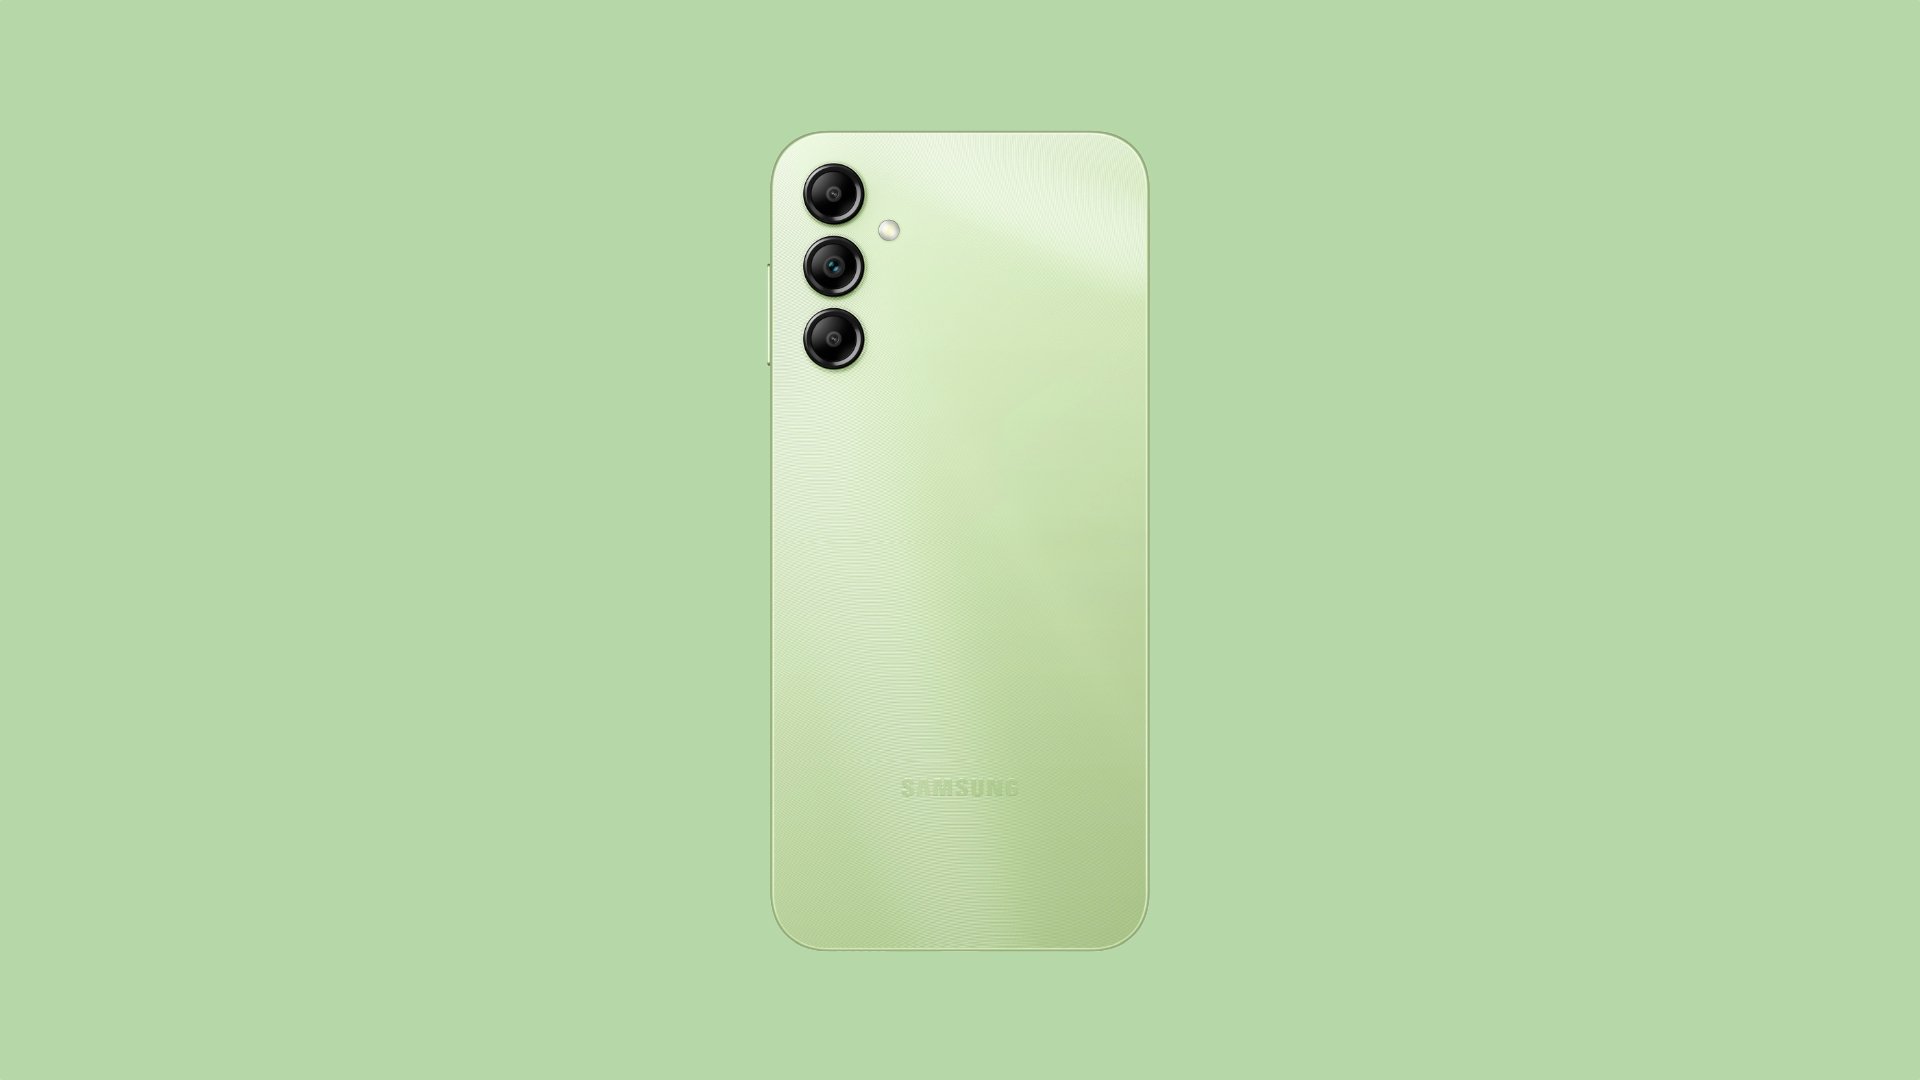 https://www.sammobile.com/wp-content/uploads/2023/01/Samsung-Galaxy-A14-5G-Green.jpg